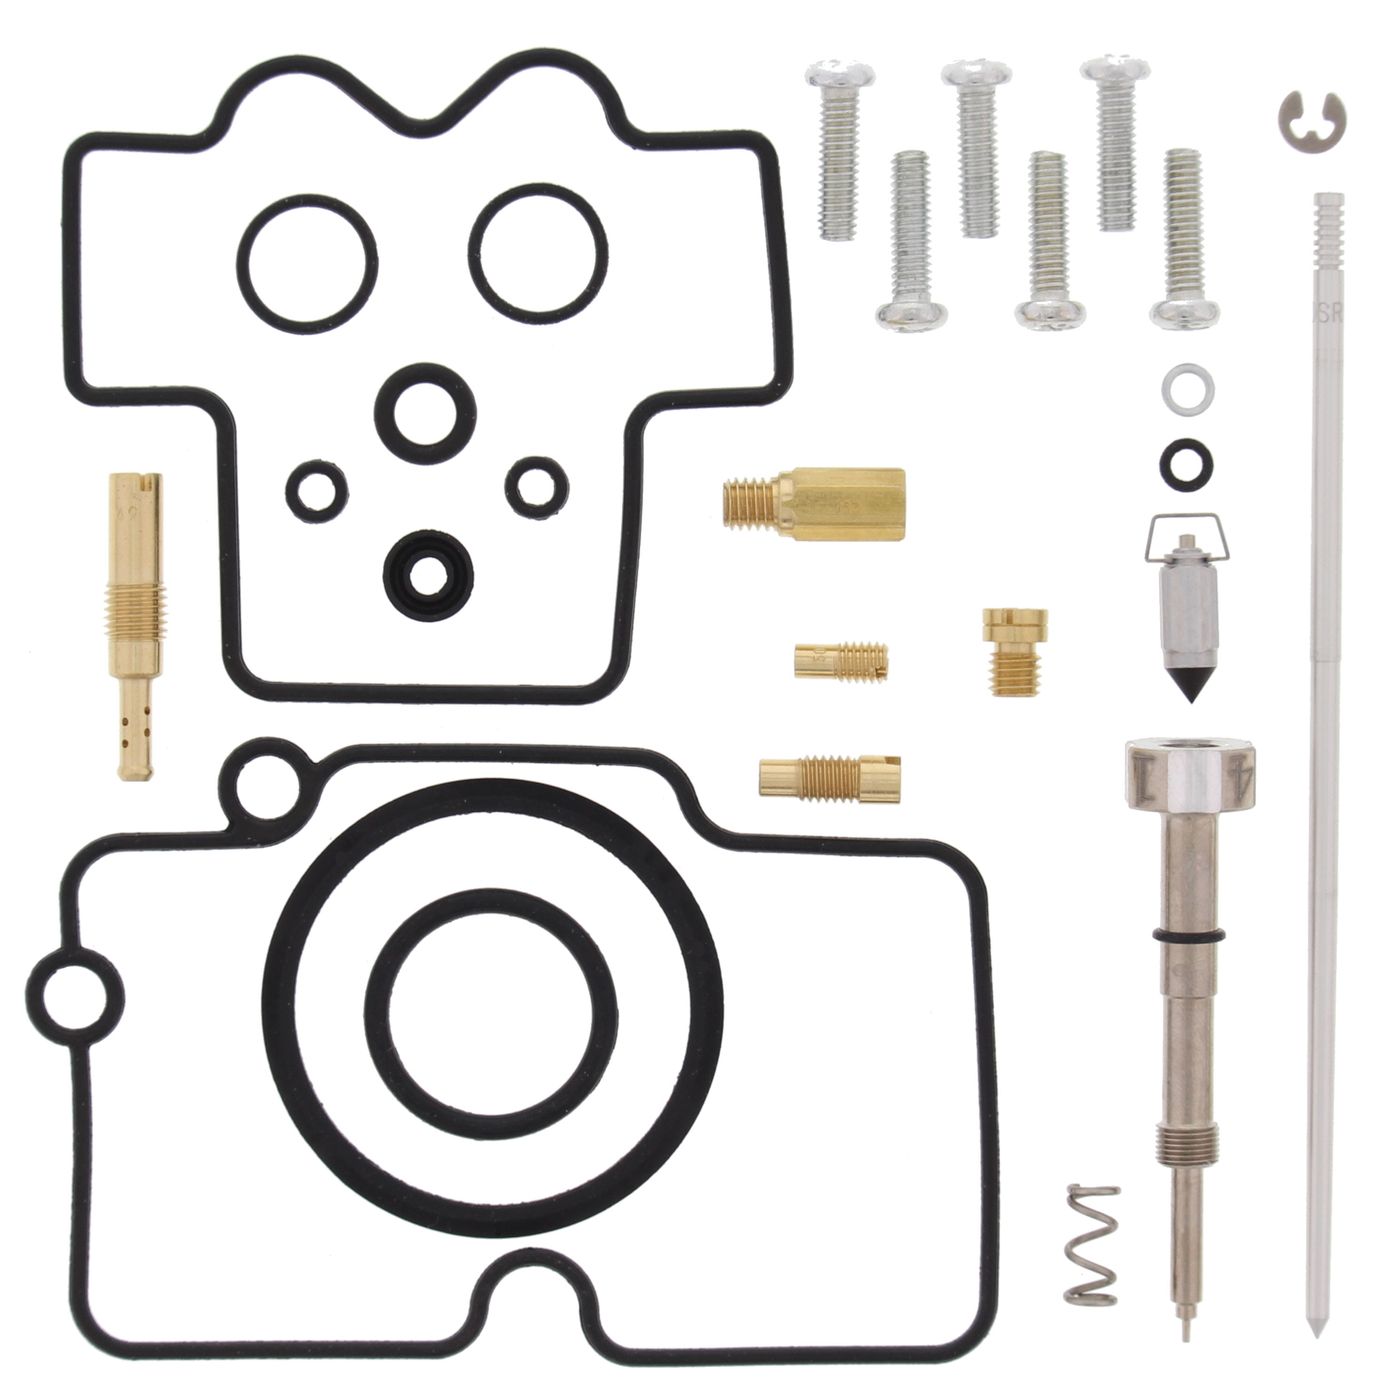 Wrp Carb Repair Kits - WRP261453 image